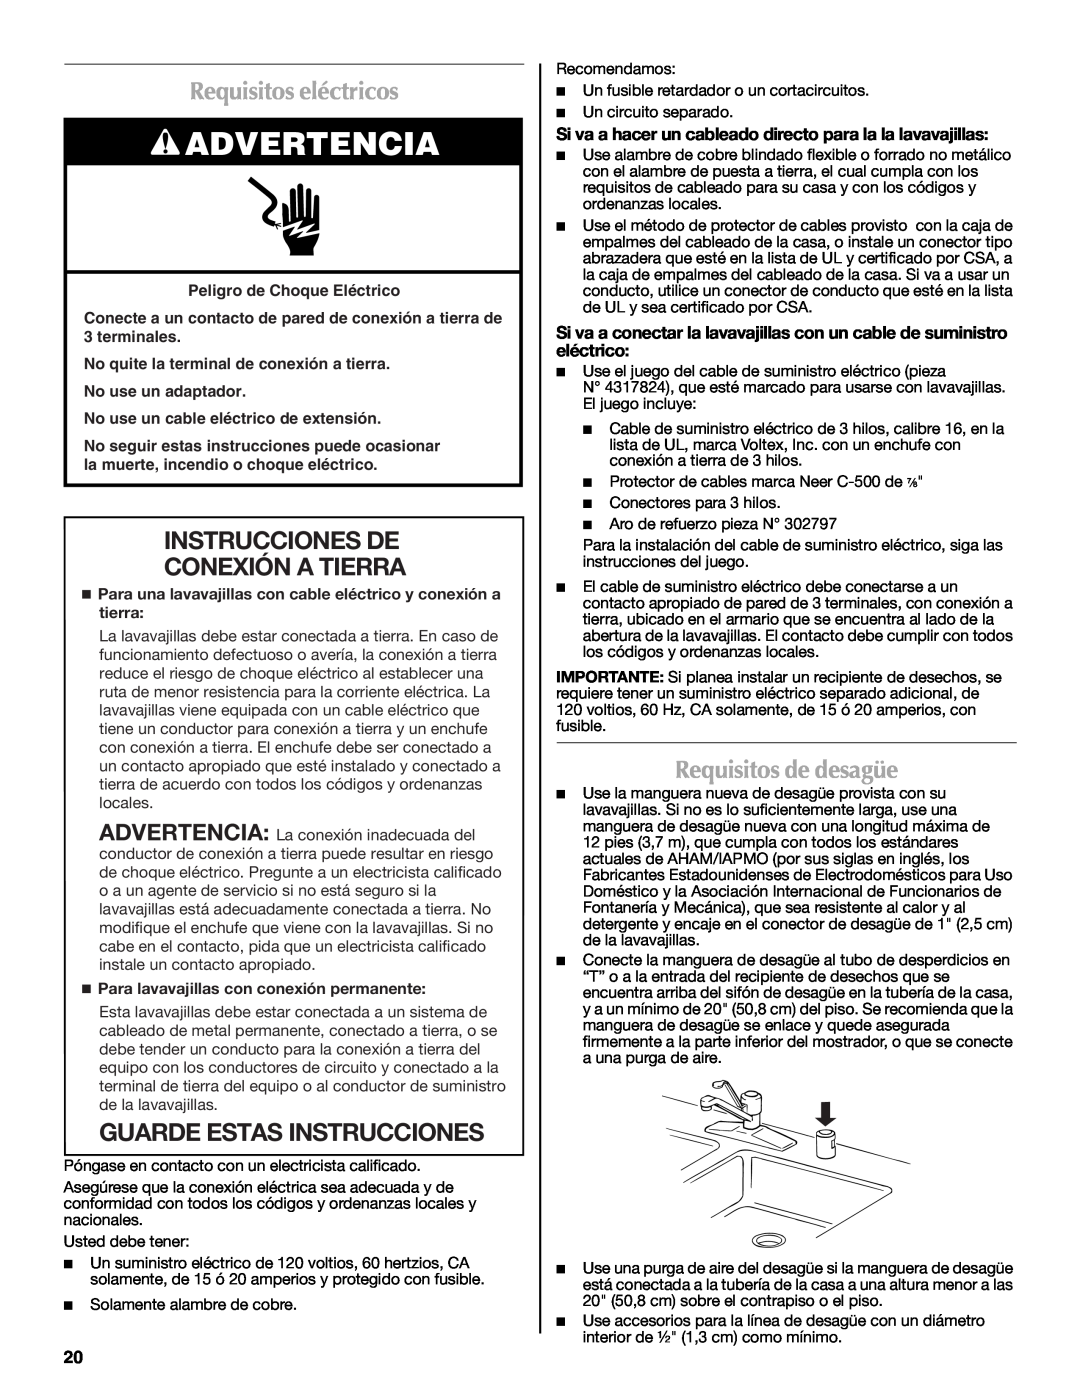 Maytag W10185071B Requisitos eléctricos, Instrucciones De Conexión A Tierra, Guarde Estas Instrucciones, Advertencia 